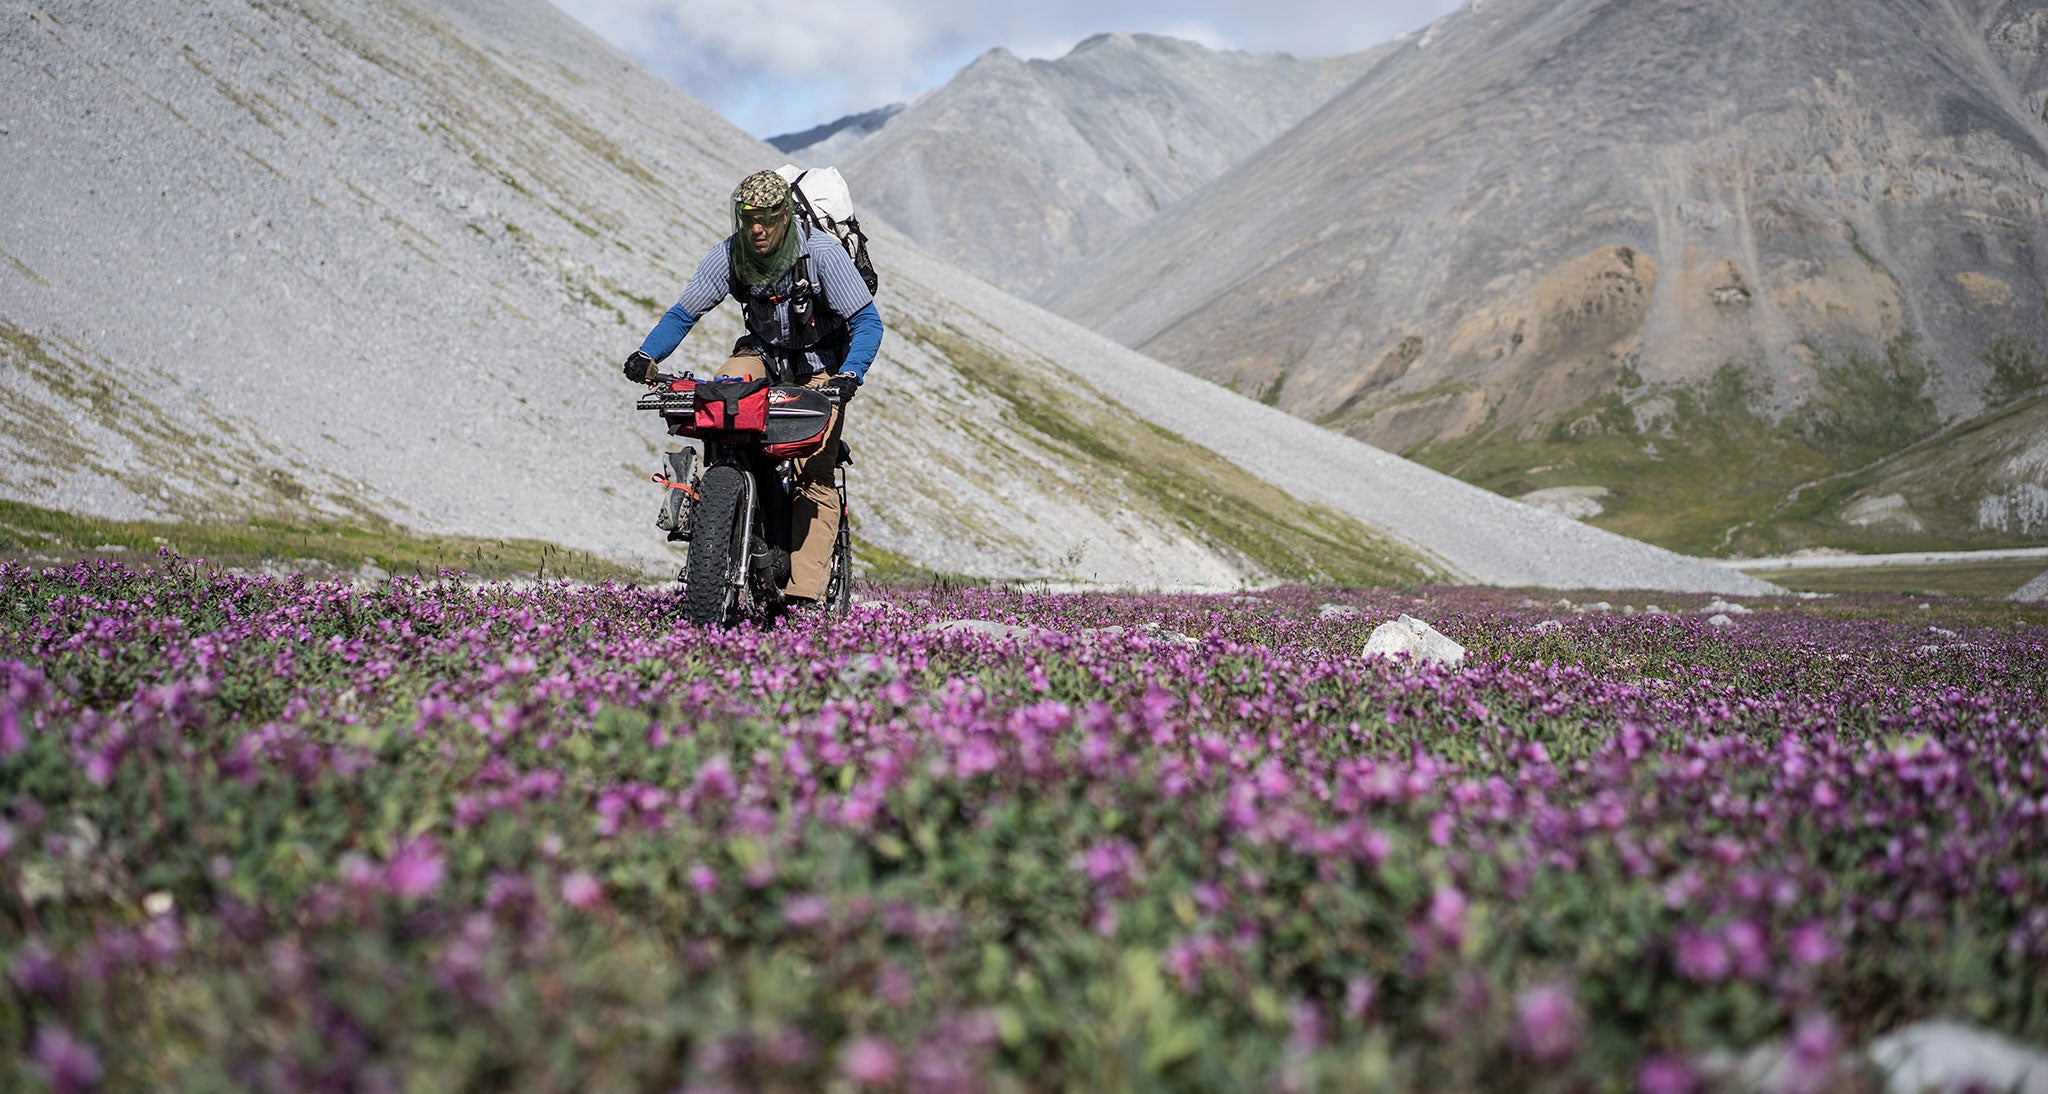 Ultralight bikepacker biking through a field of flowers